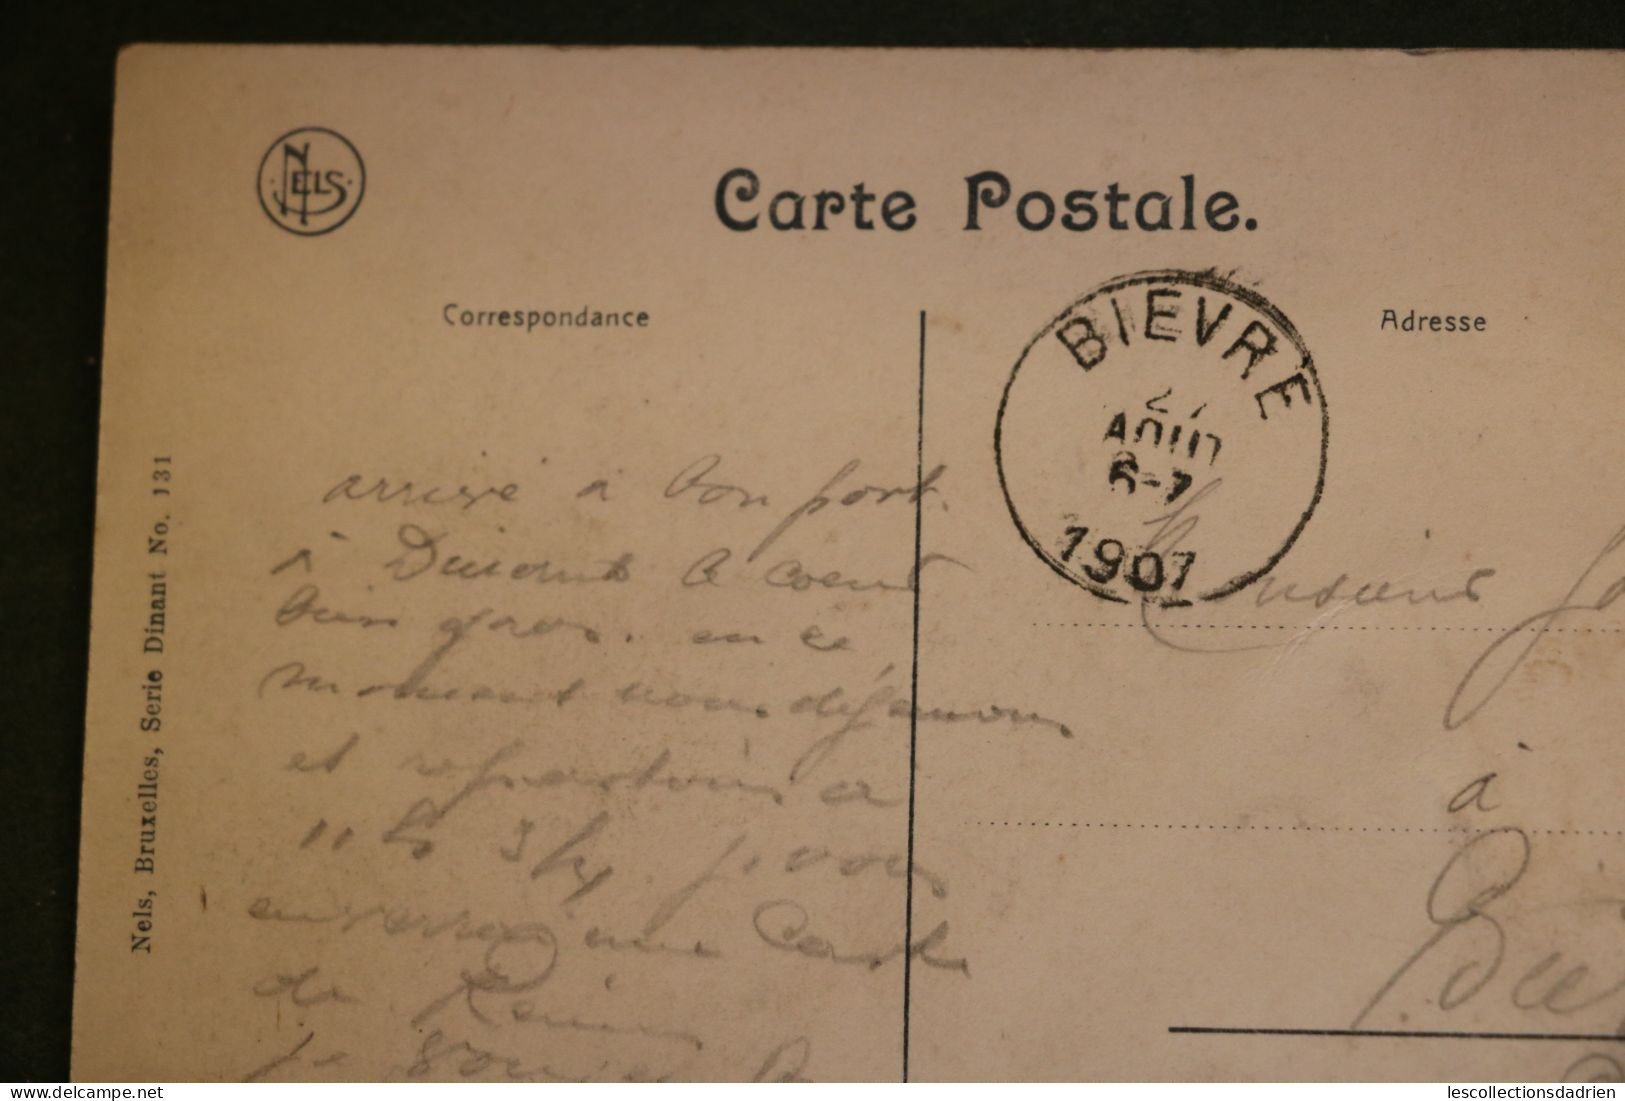 Carte postale bateau de Namur - Meuse - le port bateaux - calèches passants animée cachet Dinant et Bièvre 1907